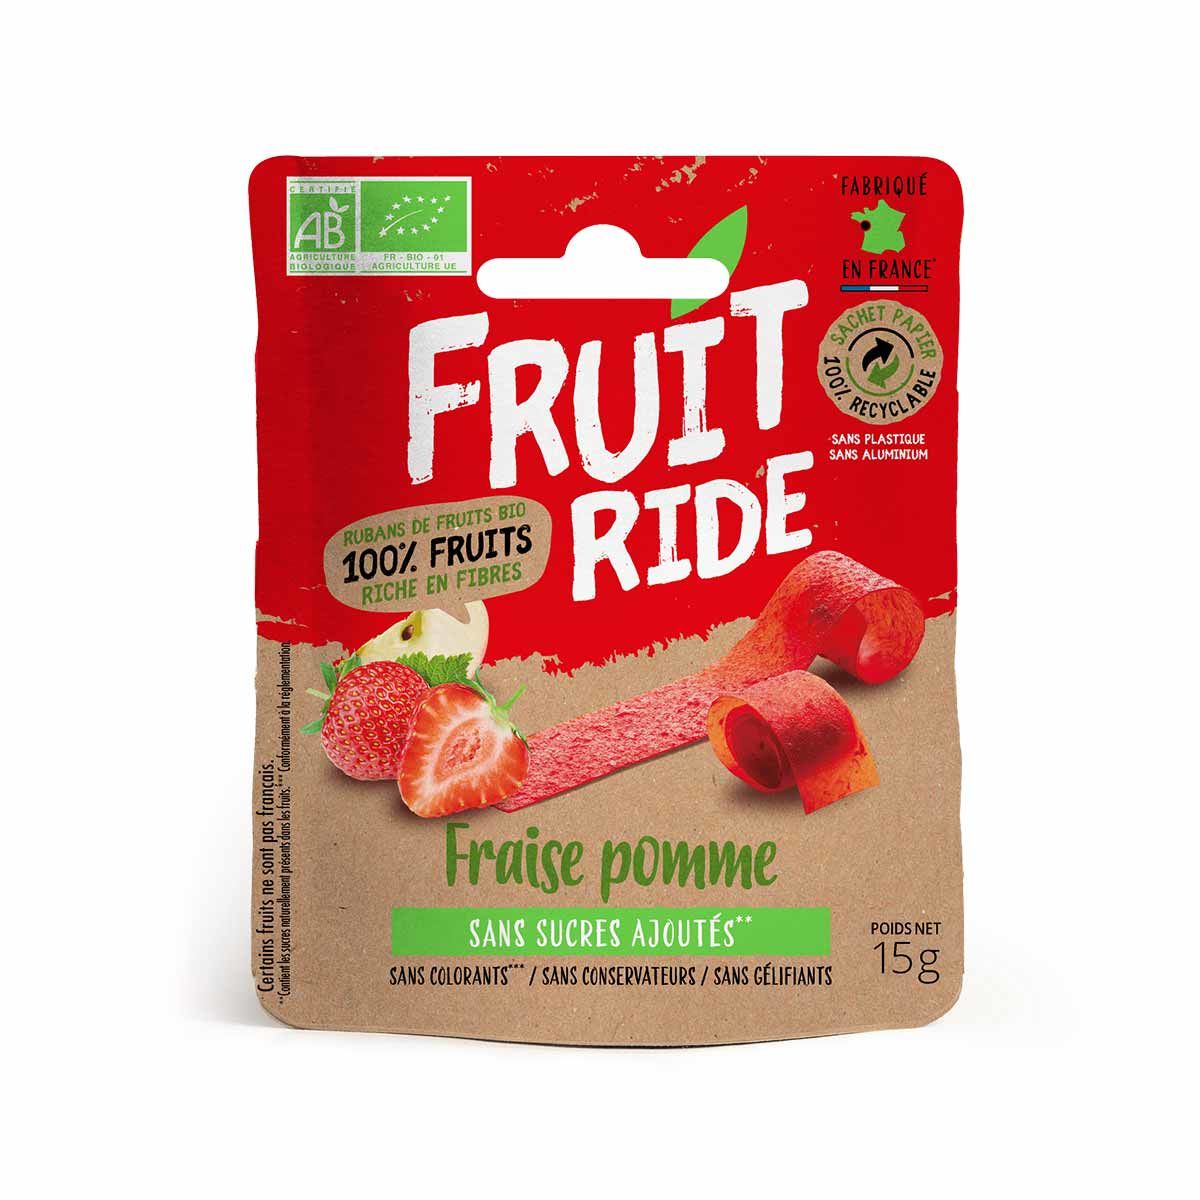 Cuirs de fruits bio Fruit Ride - Fraise, pomme